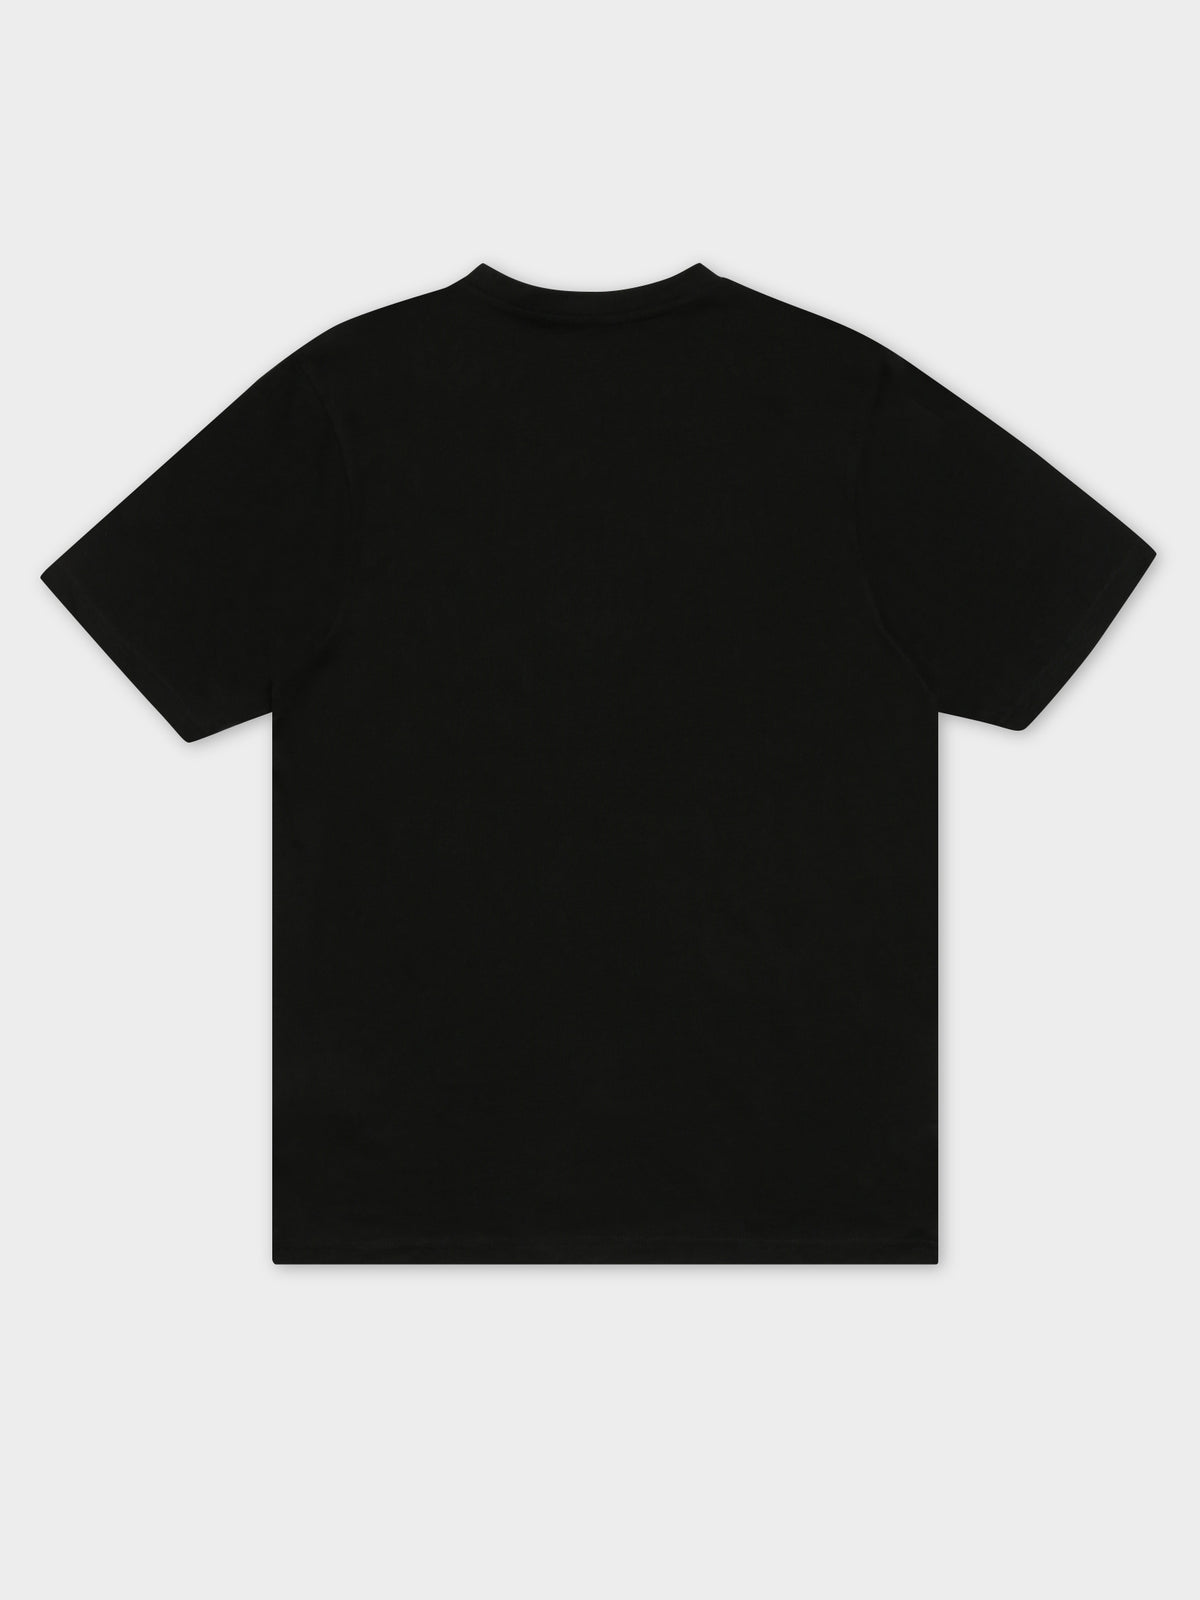 Logo Cromok Man T-Shirt in Black